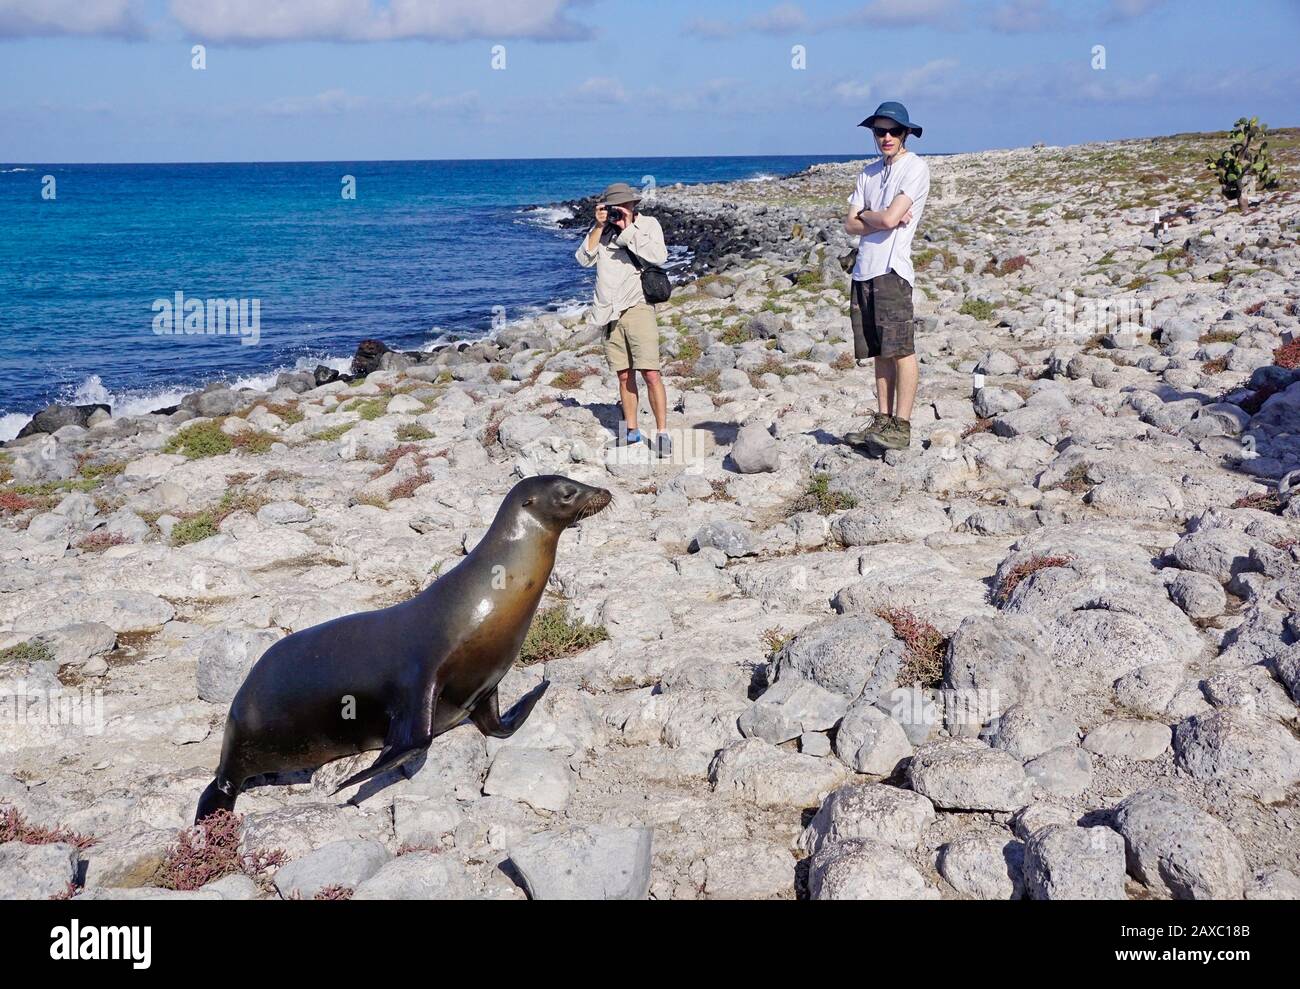 Turistico nelle isole Galapagos fotografando un leone marino sulla costa rocciosa. Foto Stock